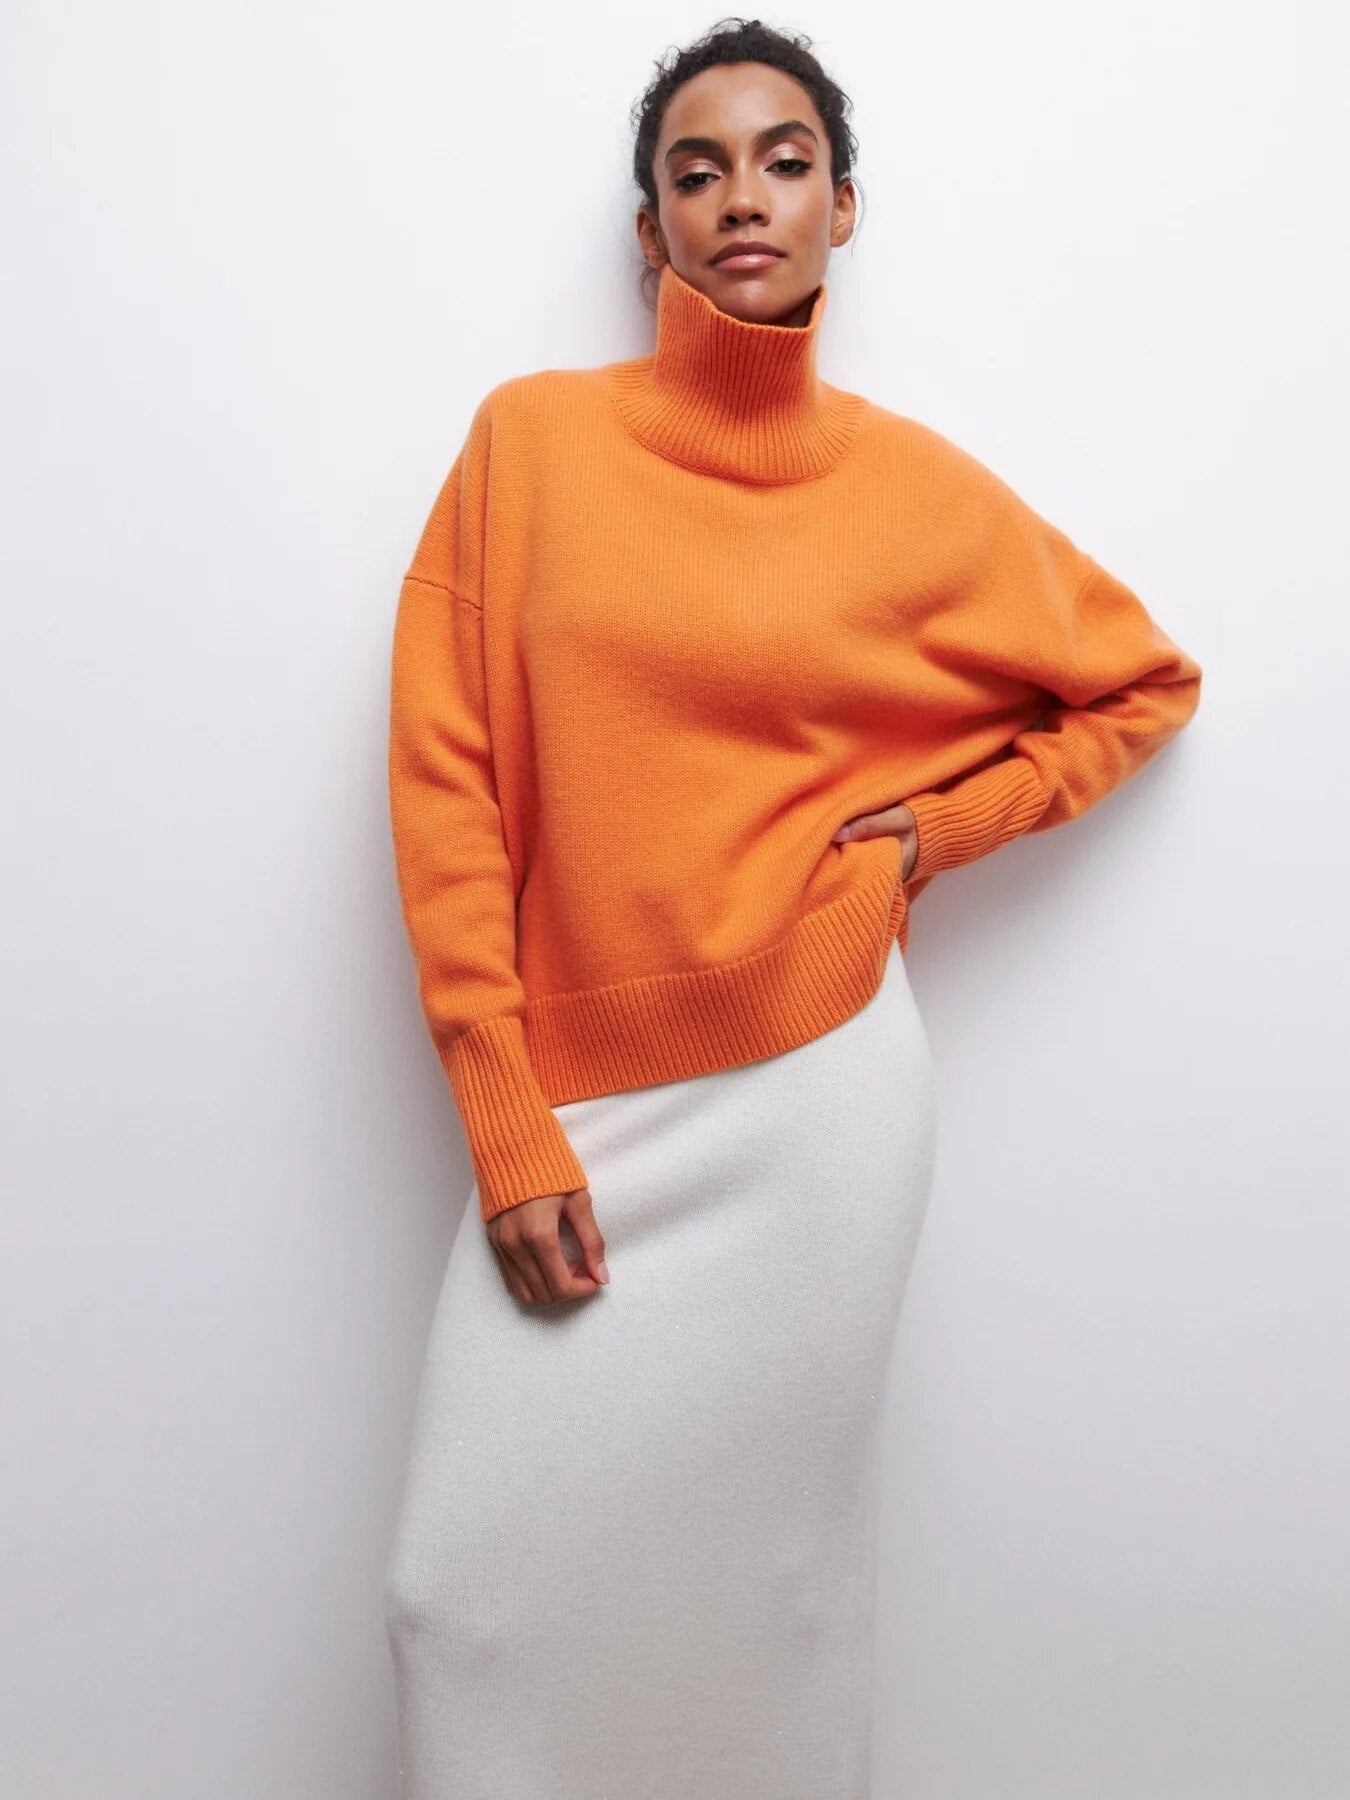 Fiaska - Hoher Kragen Pullover für Frauen